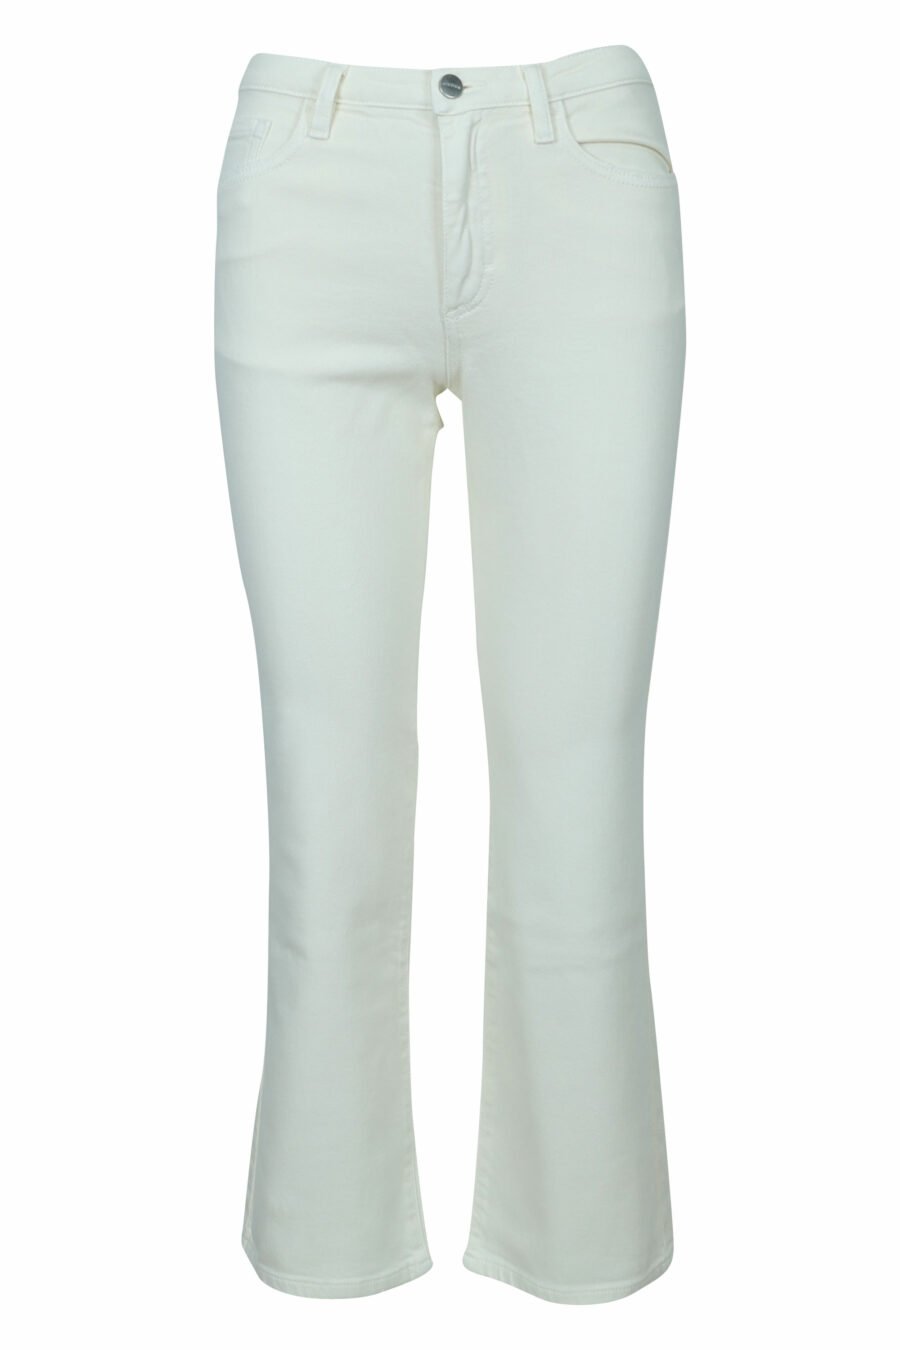 Pantalón blanco crema "Pam" con bota ancha - 8059772787895